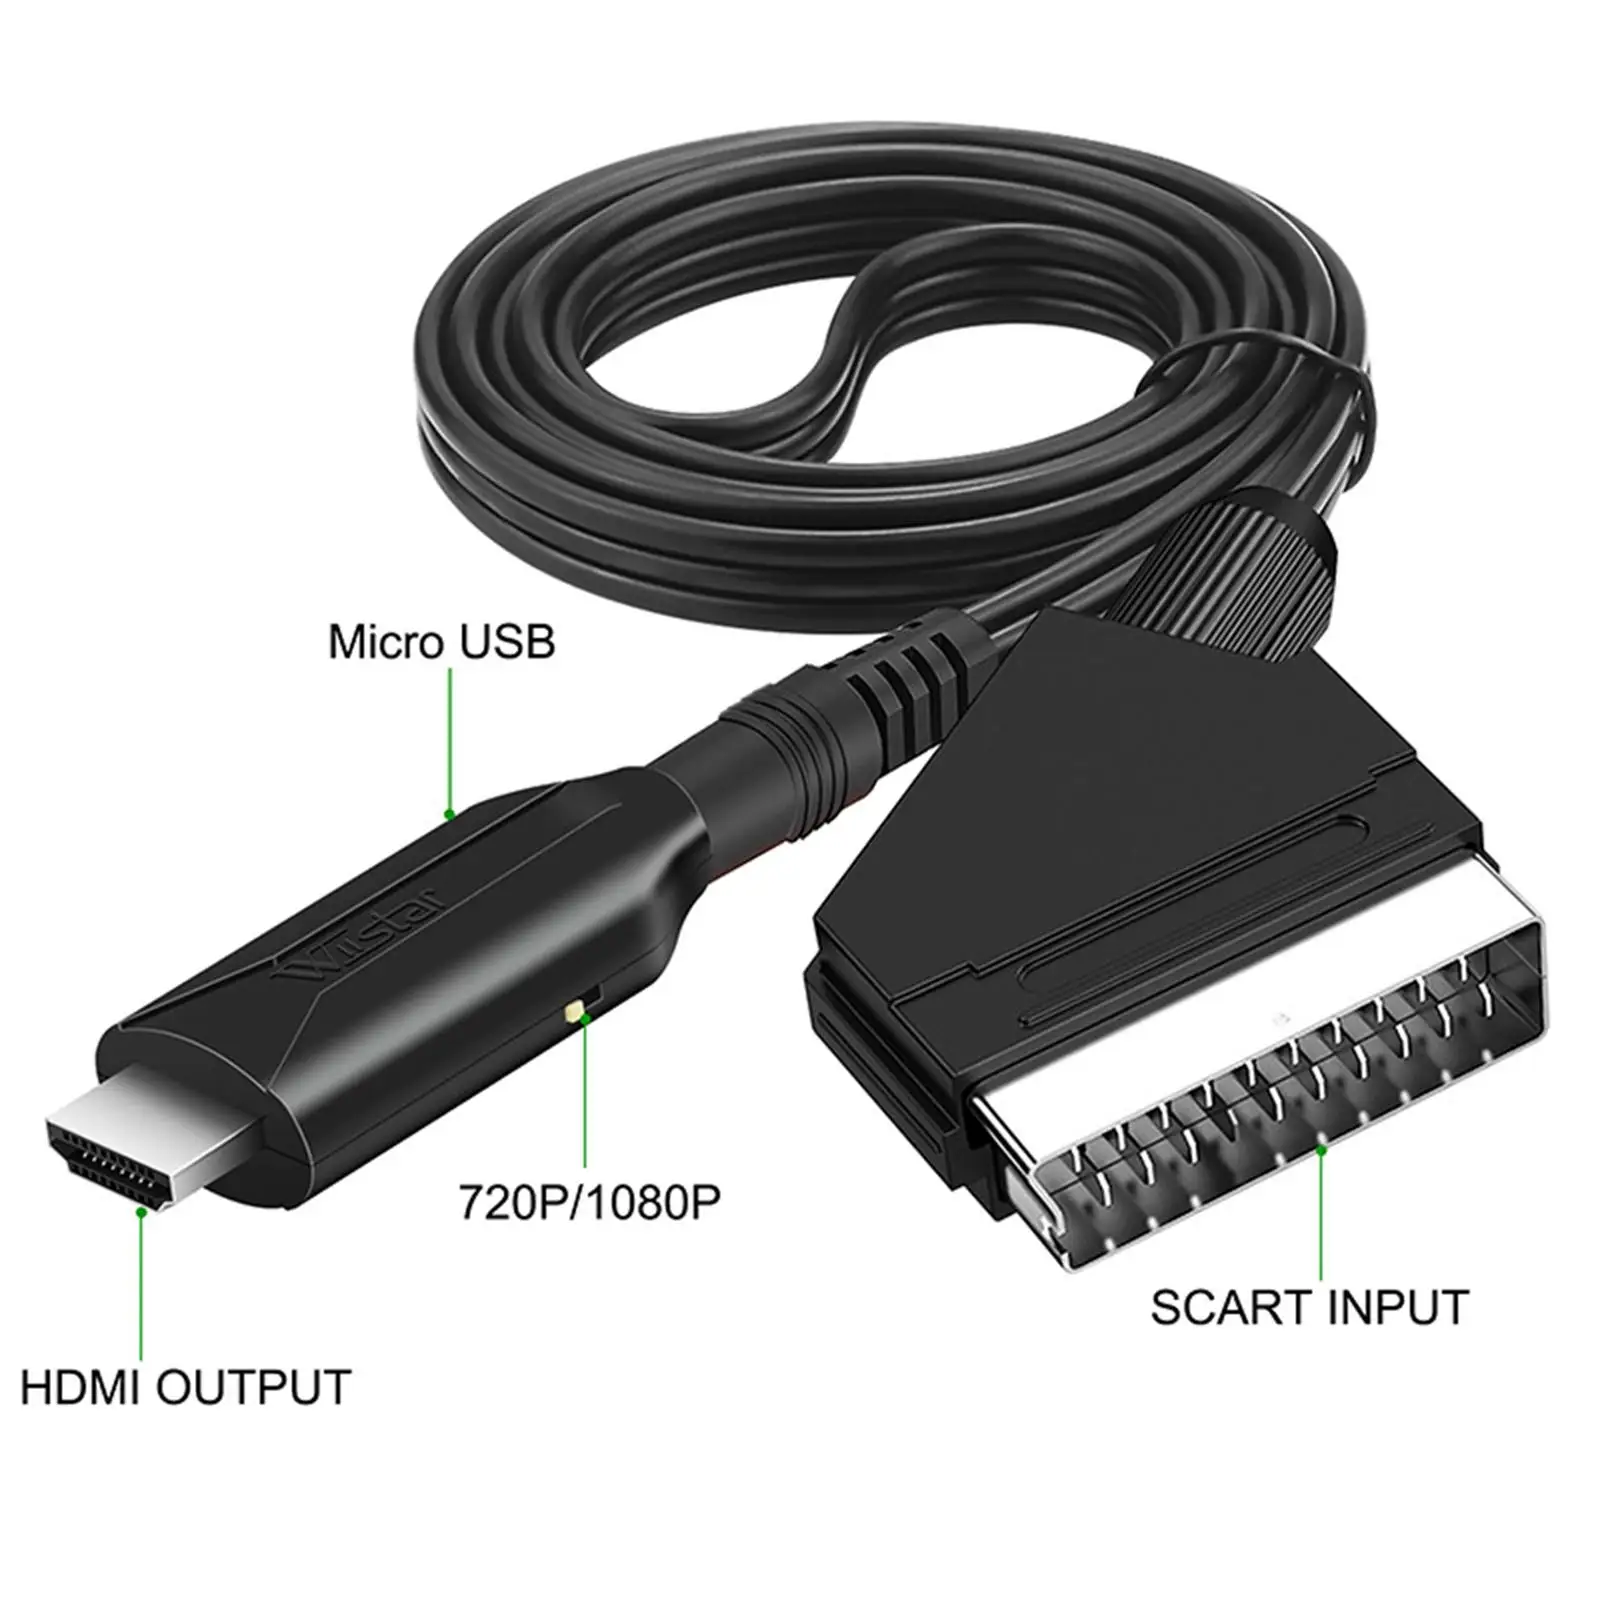 

SCART конвертер кабель, компактный гибкий с USB кабелем SCART вход аудио видео адаптер для DVD